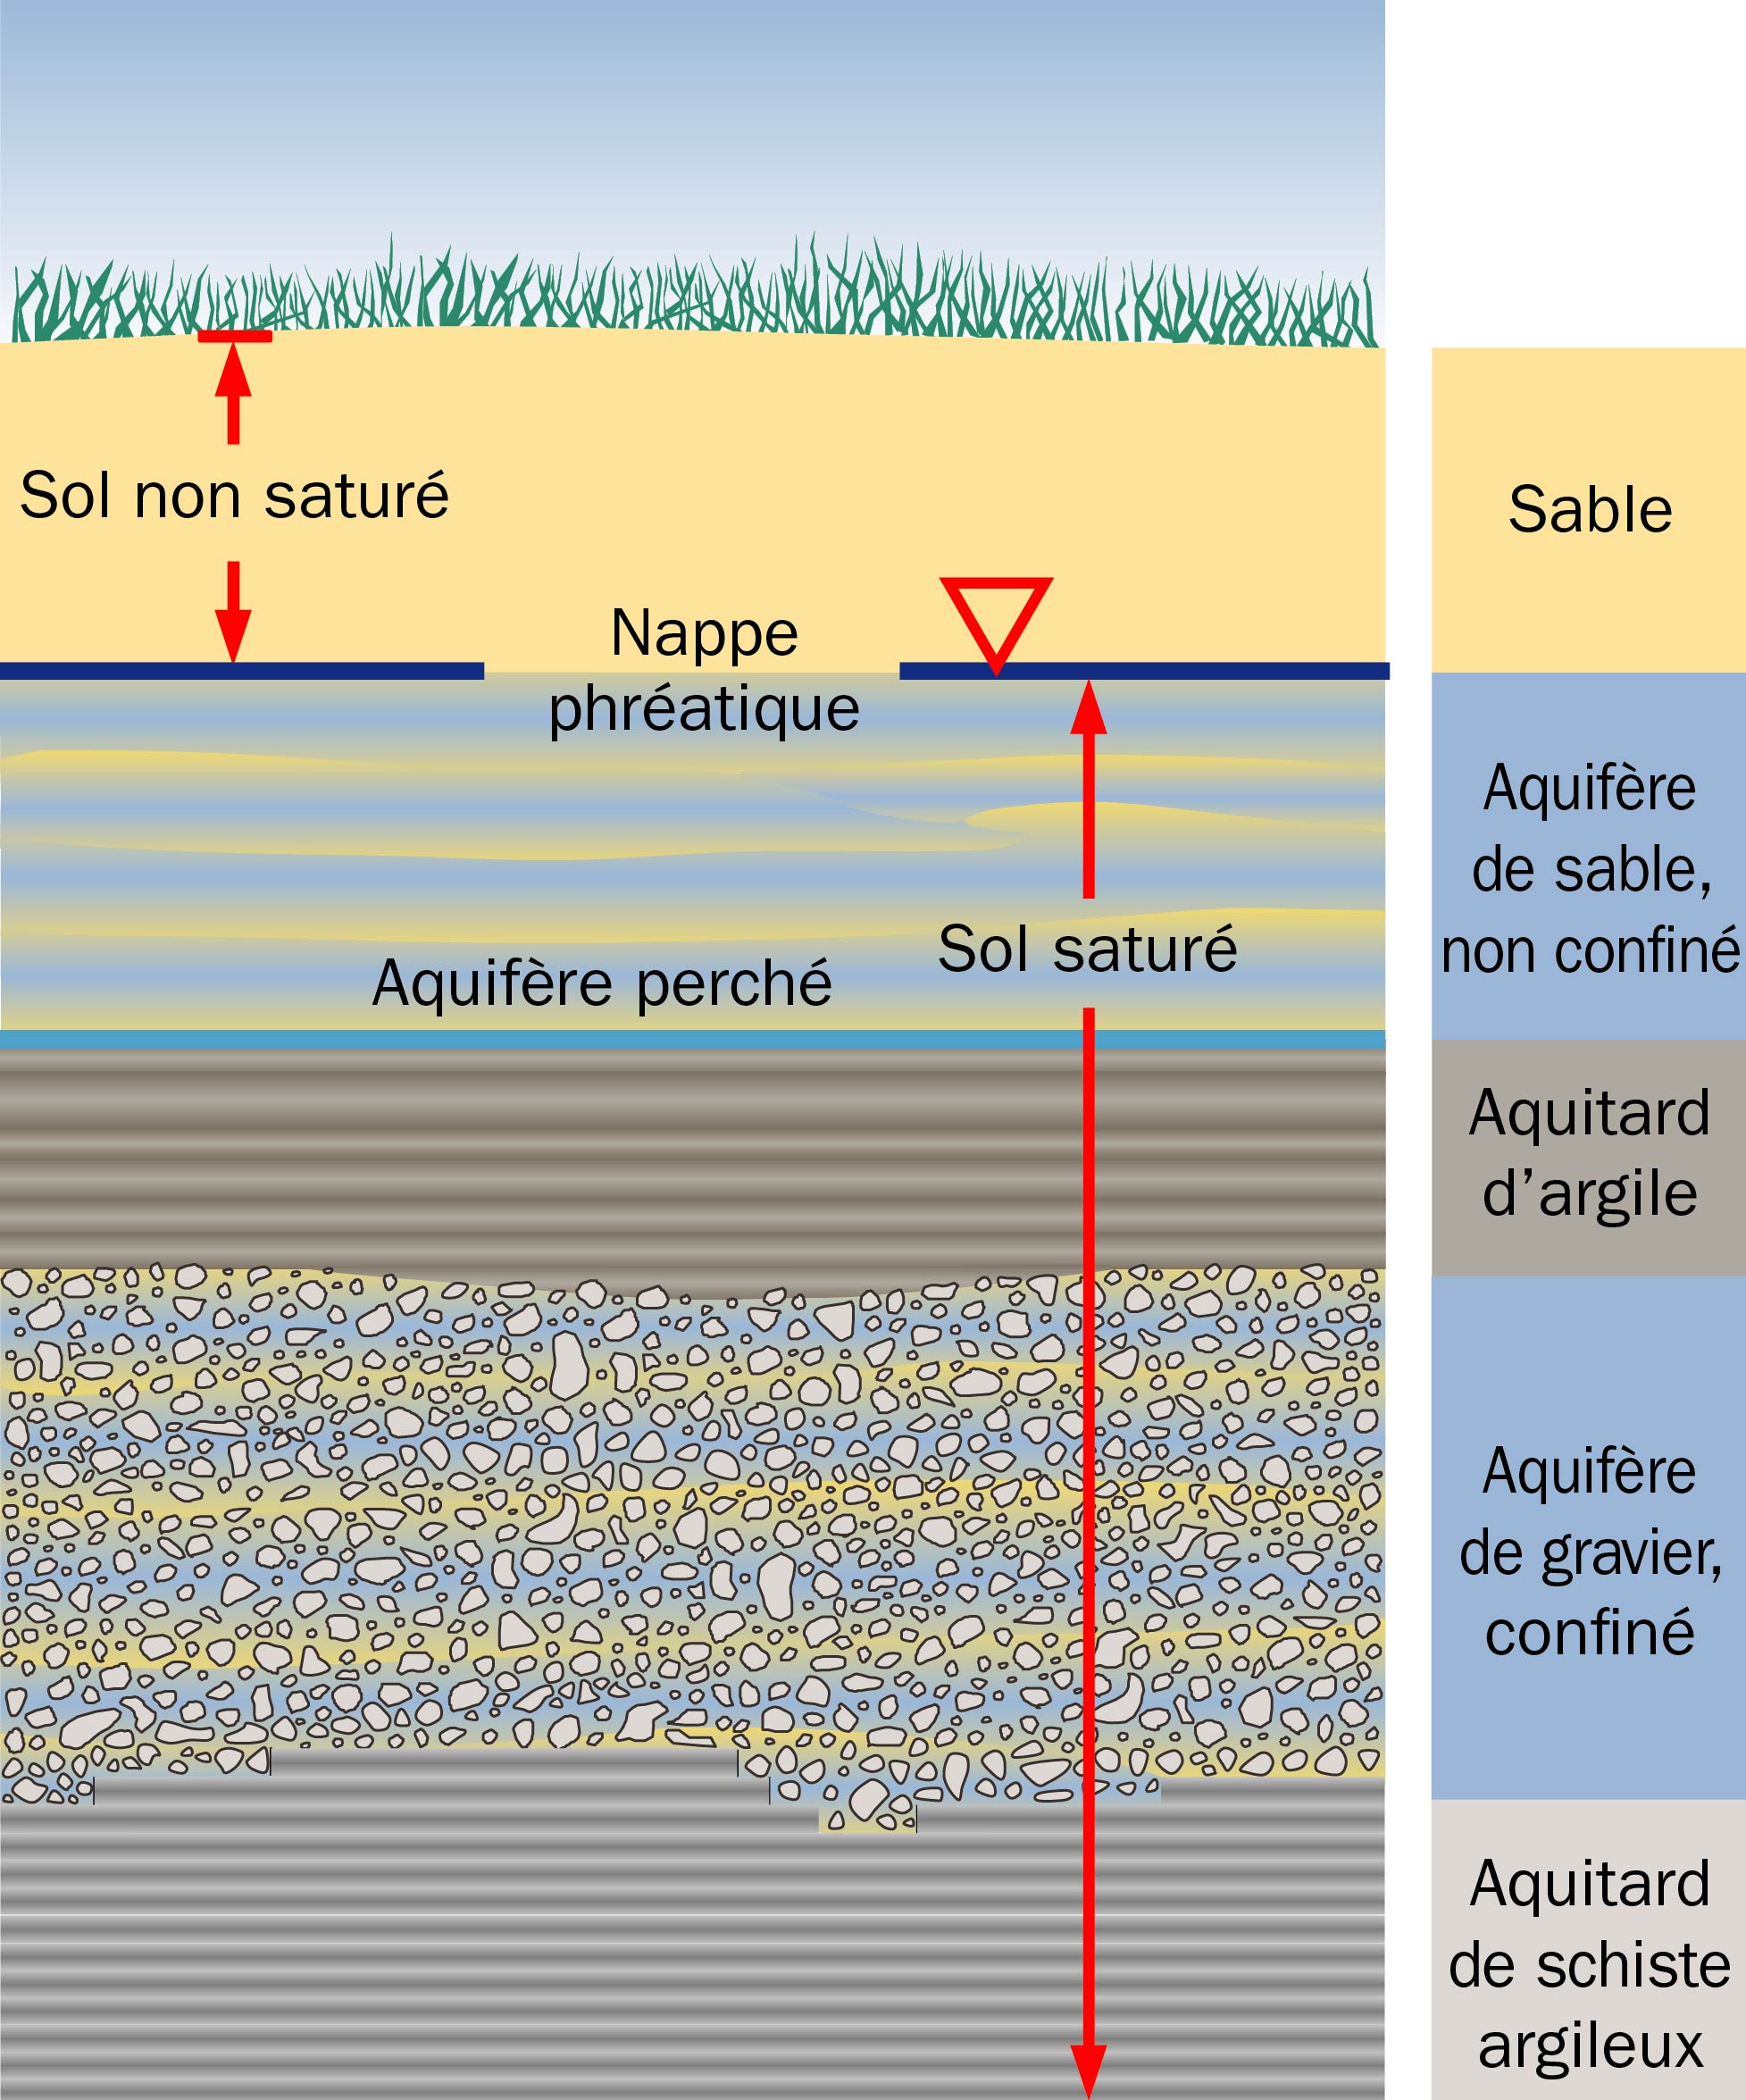 Le dessin montre les différentes couches d’un sol saturé et d’un sol non saturé que l’on retrouve au-dessus et au-dessous de la nappe phréatique